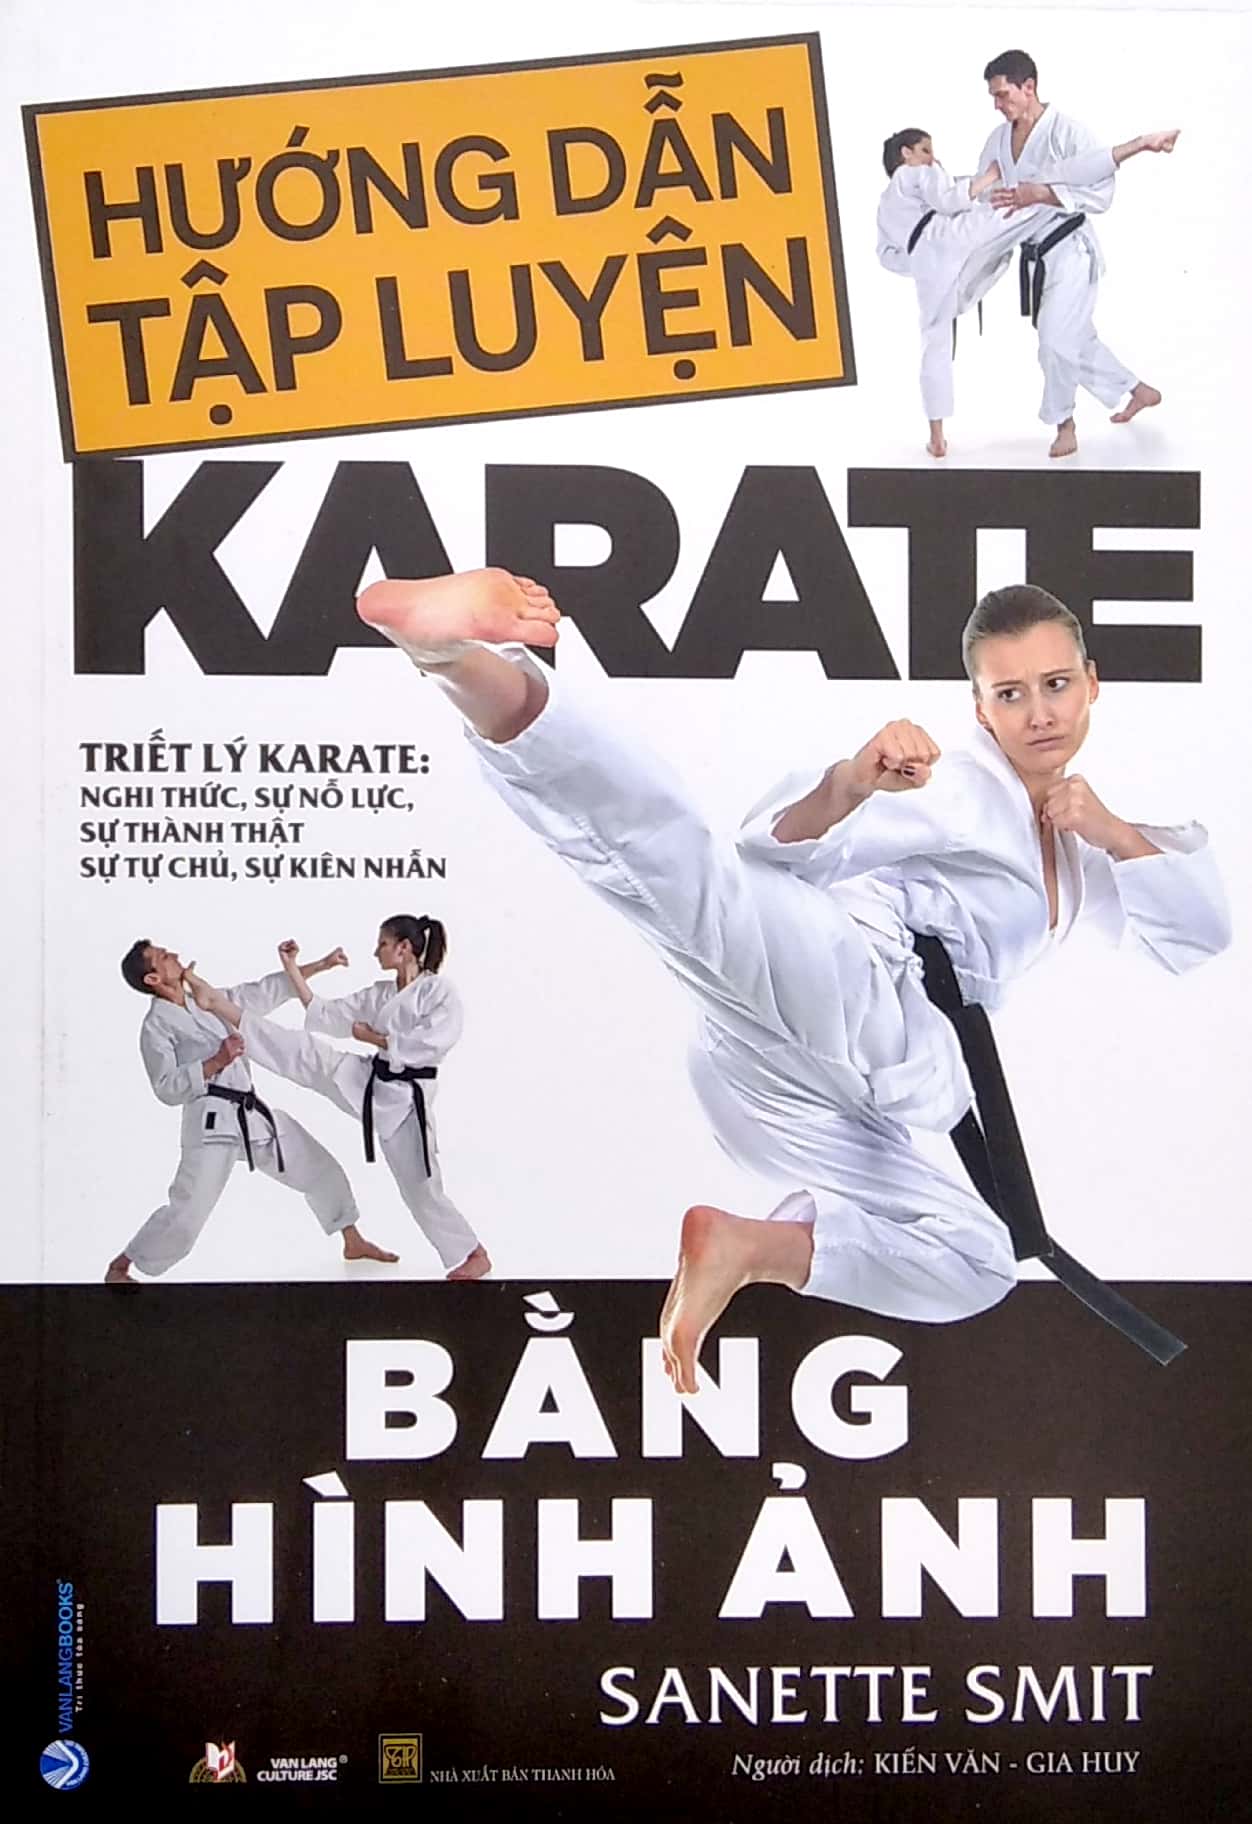 Hướng Dẫn Tập Luyện Karate Bằng Hình Ảnh PDF